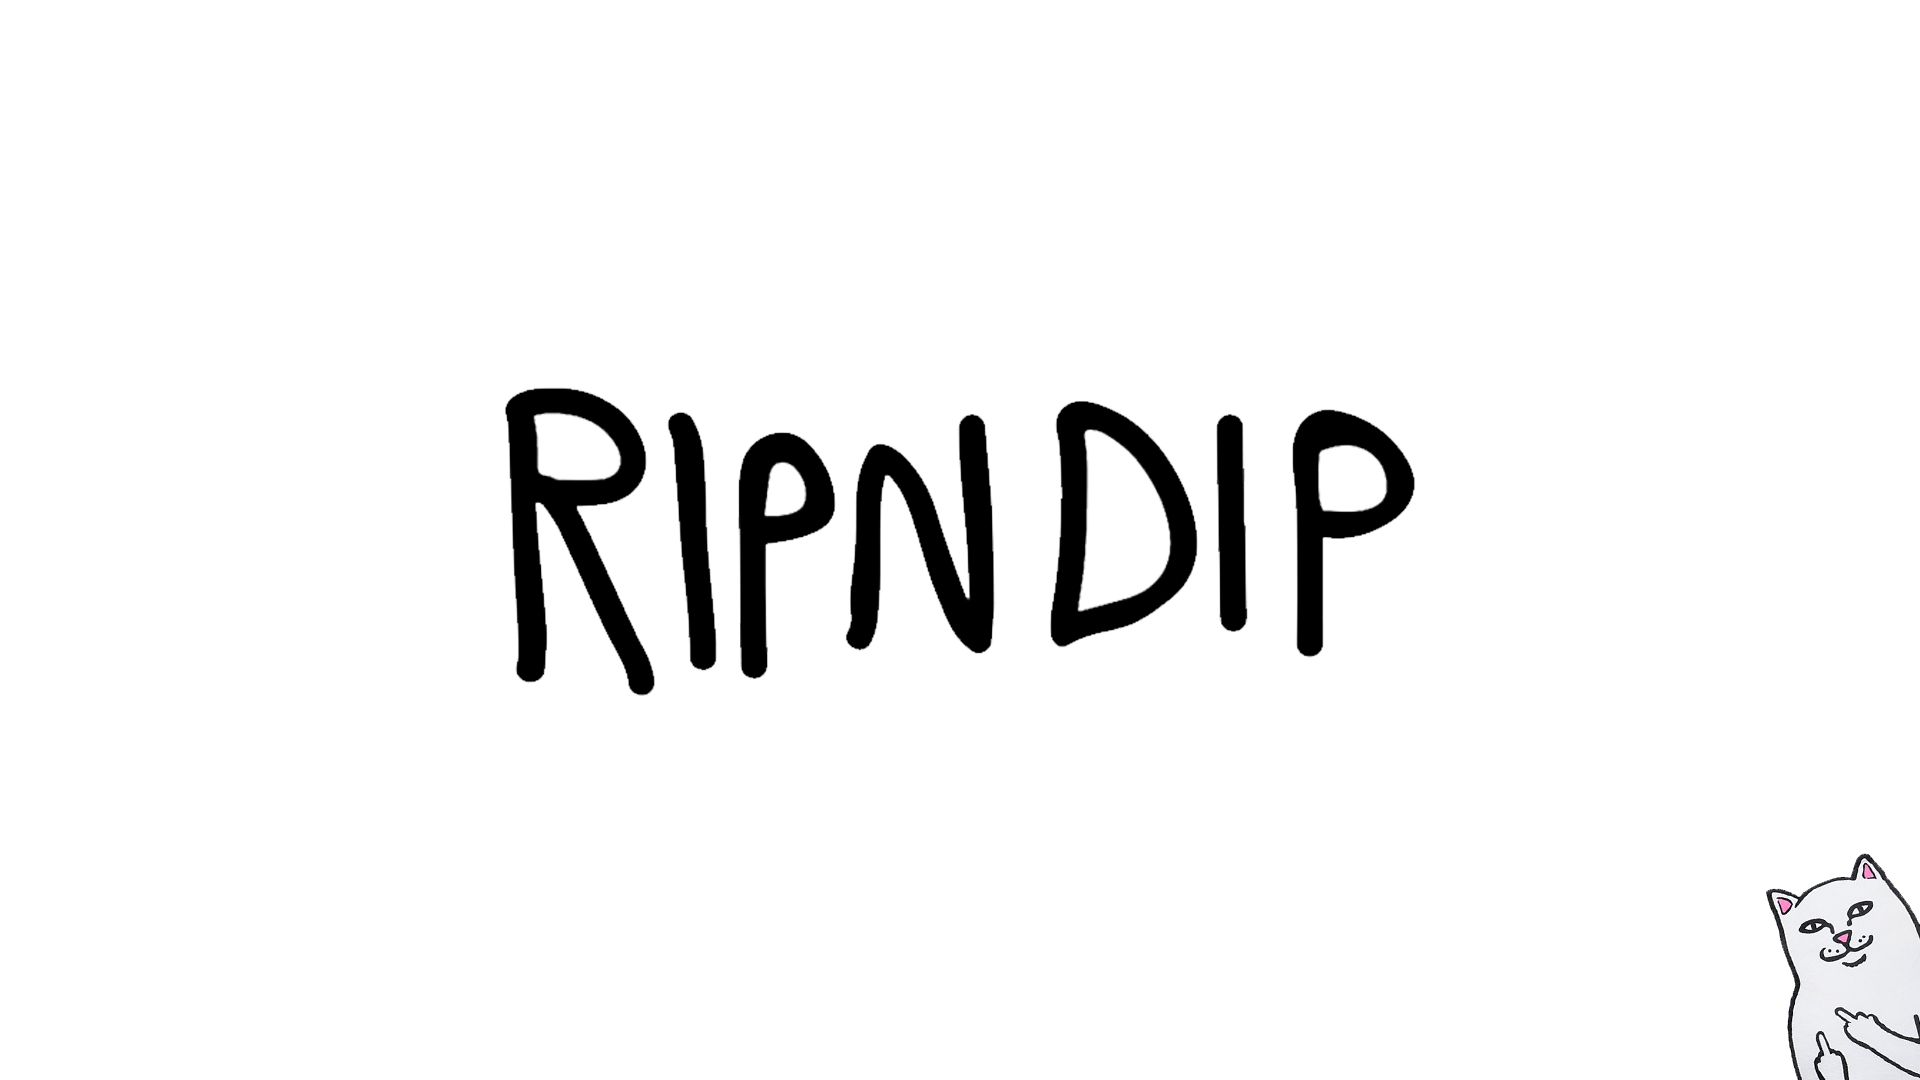 Ripndip Wallpaper Logo - I Made a Simple Desktop Background (1920x1080) : RIPNDIP